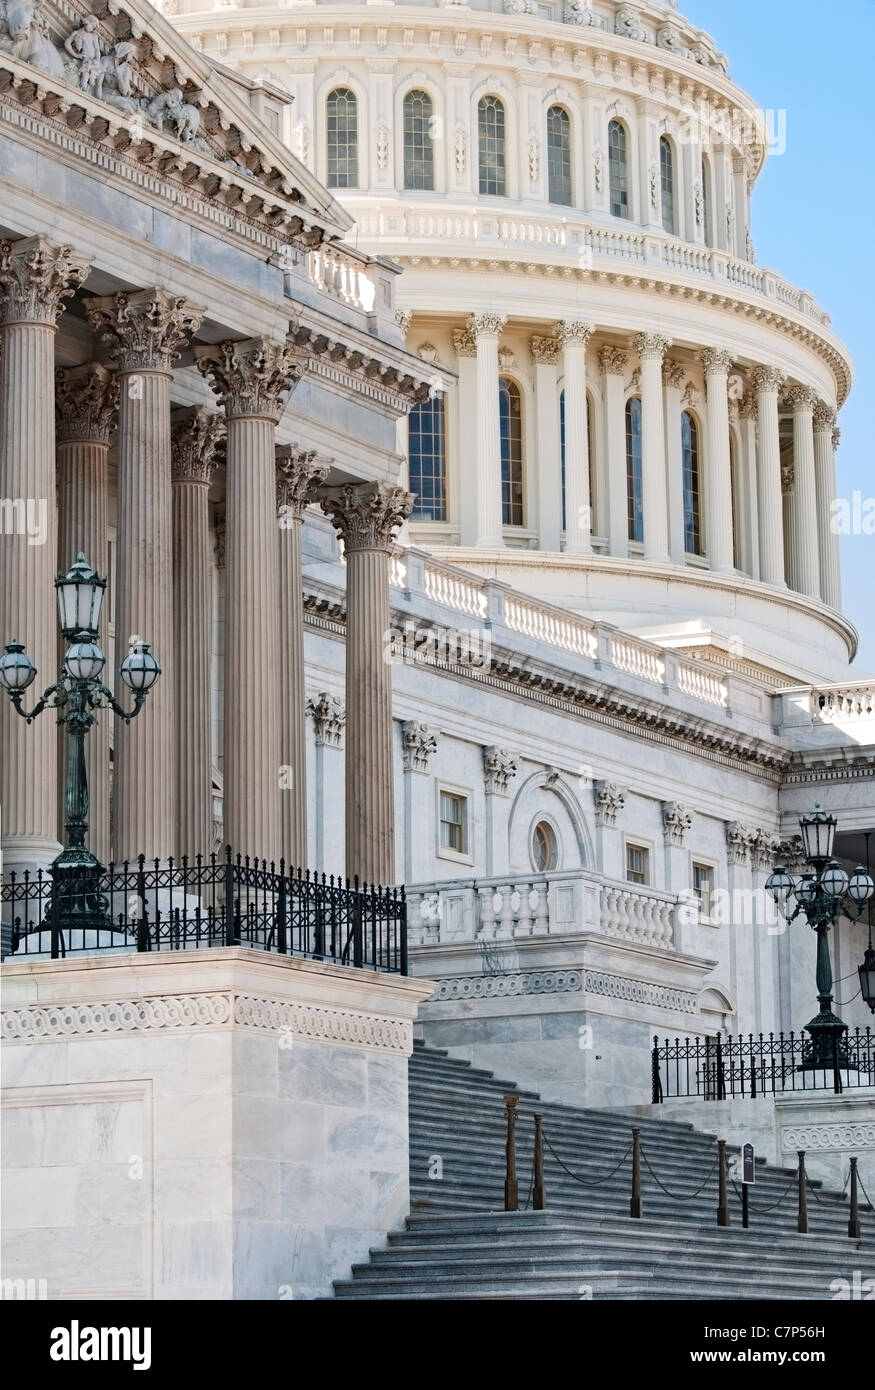 Eine partielle Außenansicht des US Capitol Gebäude mit Säulen, Ostansicht Flügel Stockfoto